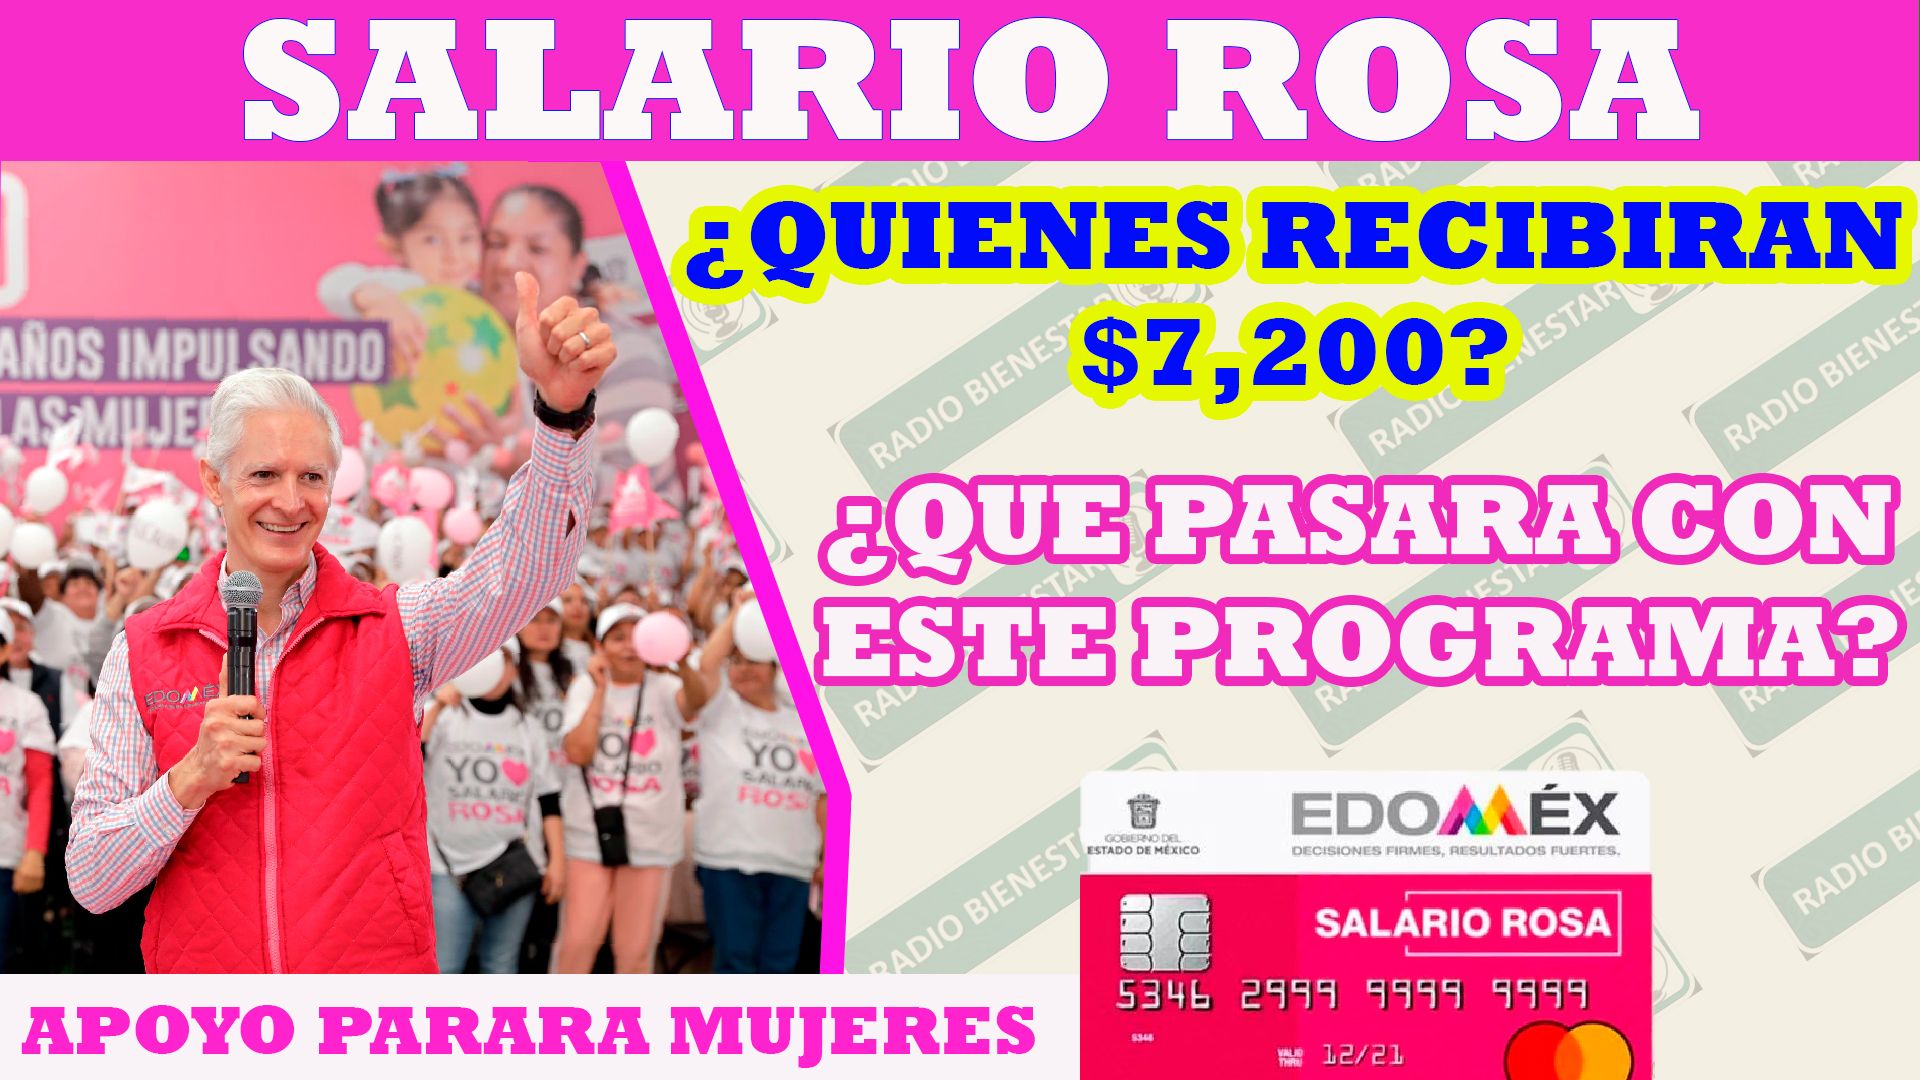 ¡Salario Rosa!, ¿qué mujeres recibirán el pago final de $7,200?, ¿que pasara con el programa?